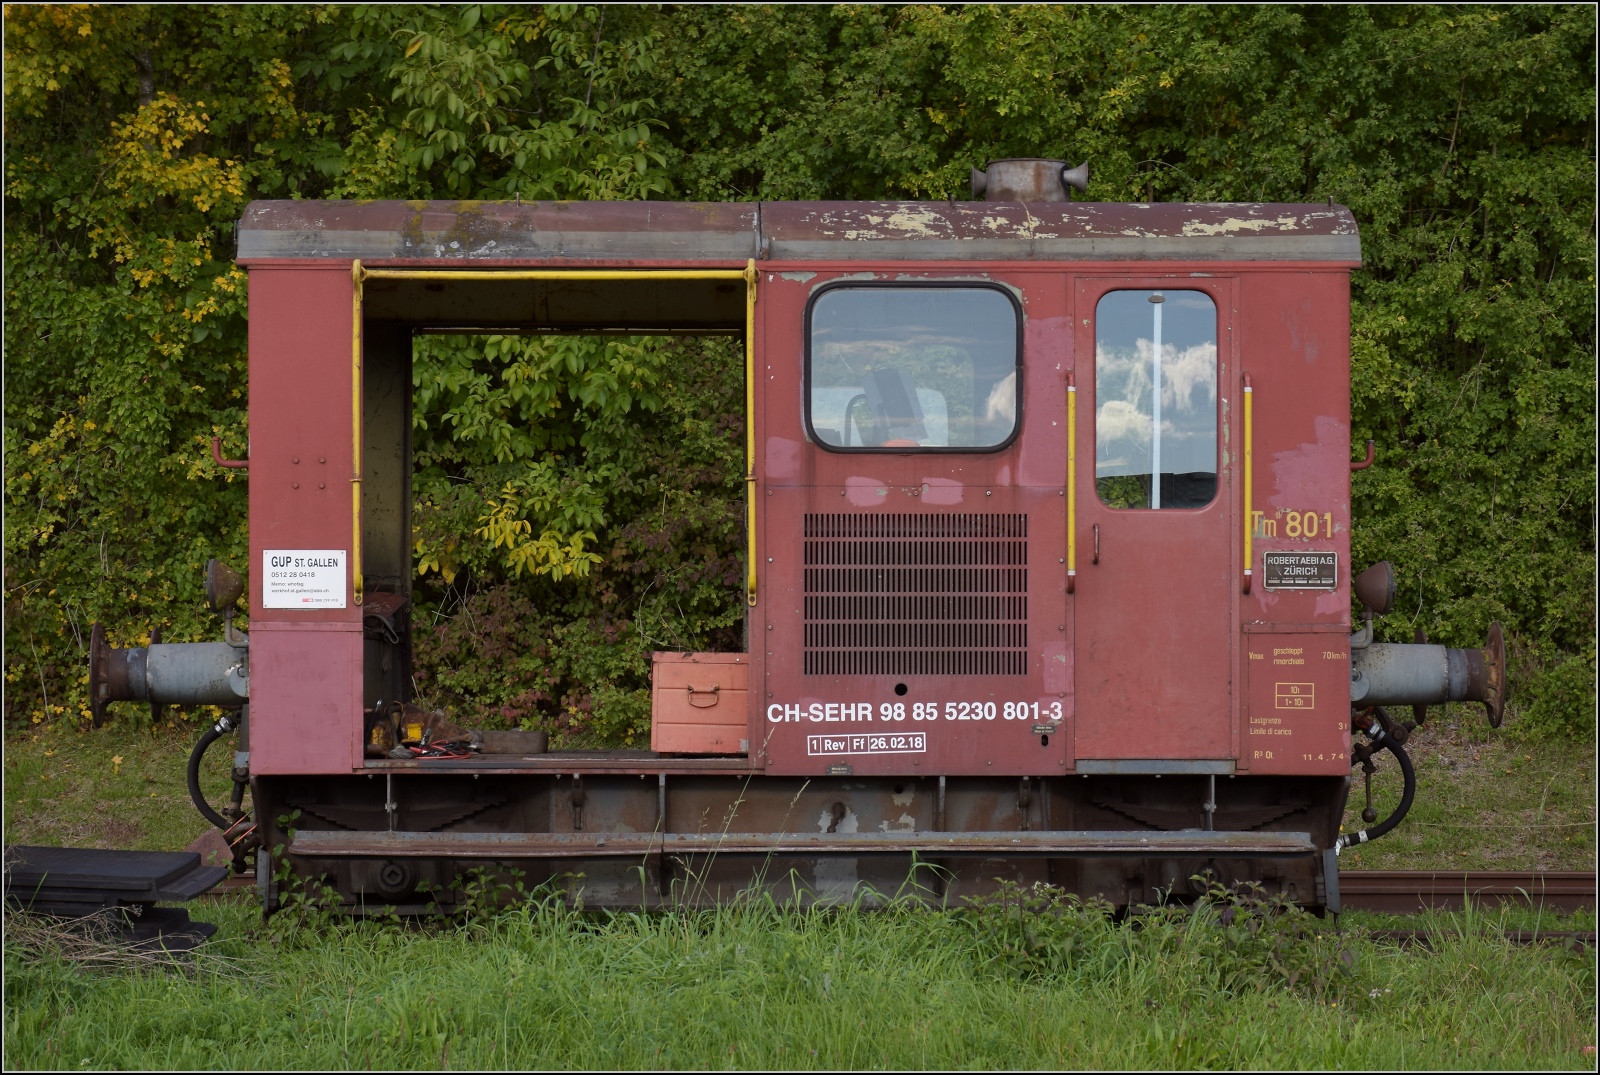 Schienenverkehr am Schienerberg. Nebenbei in Hemishofen, Tm II 801 ist wohl mobiler als die anderen und hat sogar eine NVR-Nummer bekommen: CH-SEHR 98 85 5 230 801-3 . Oktober 2022.